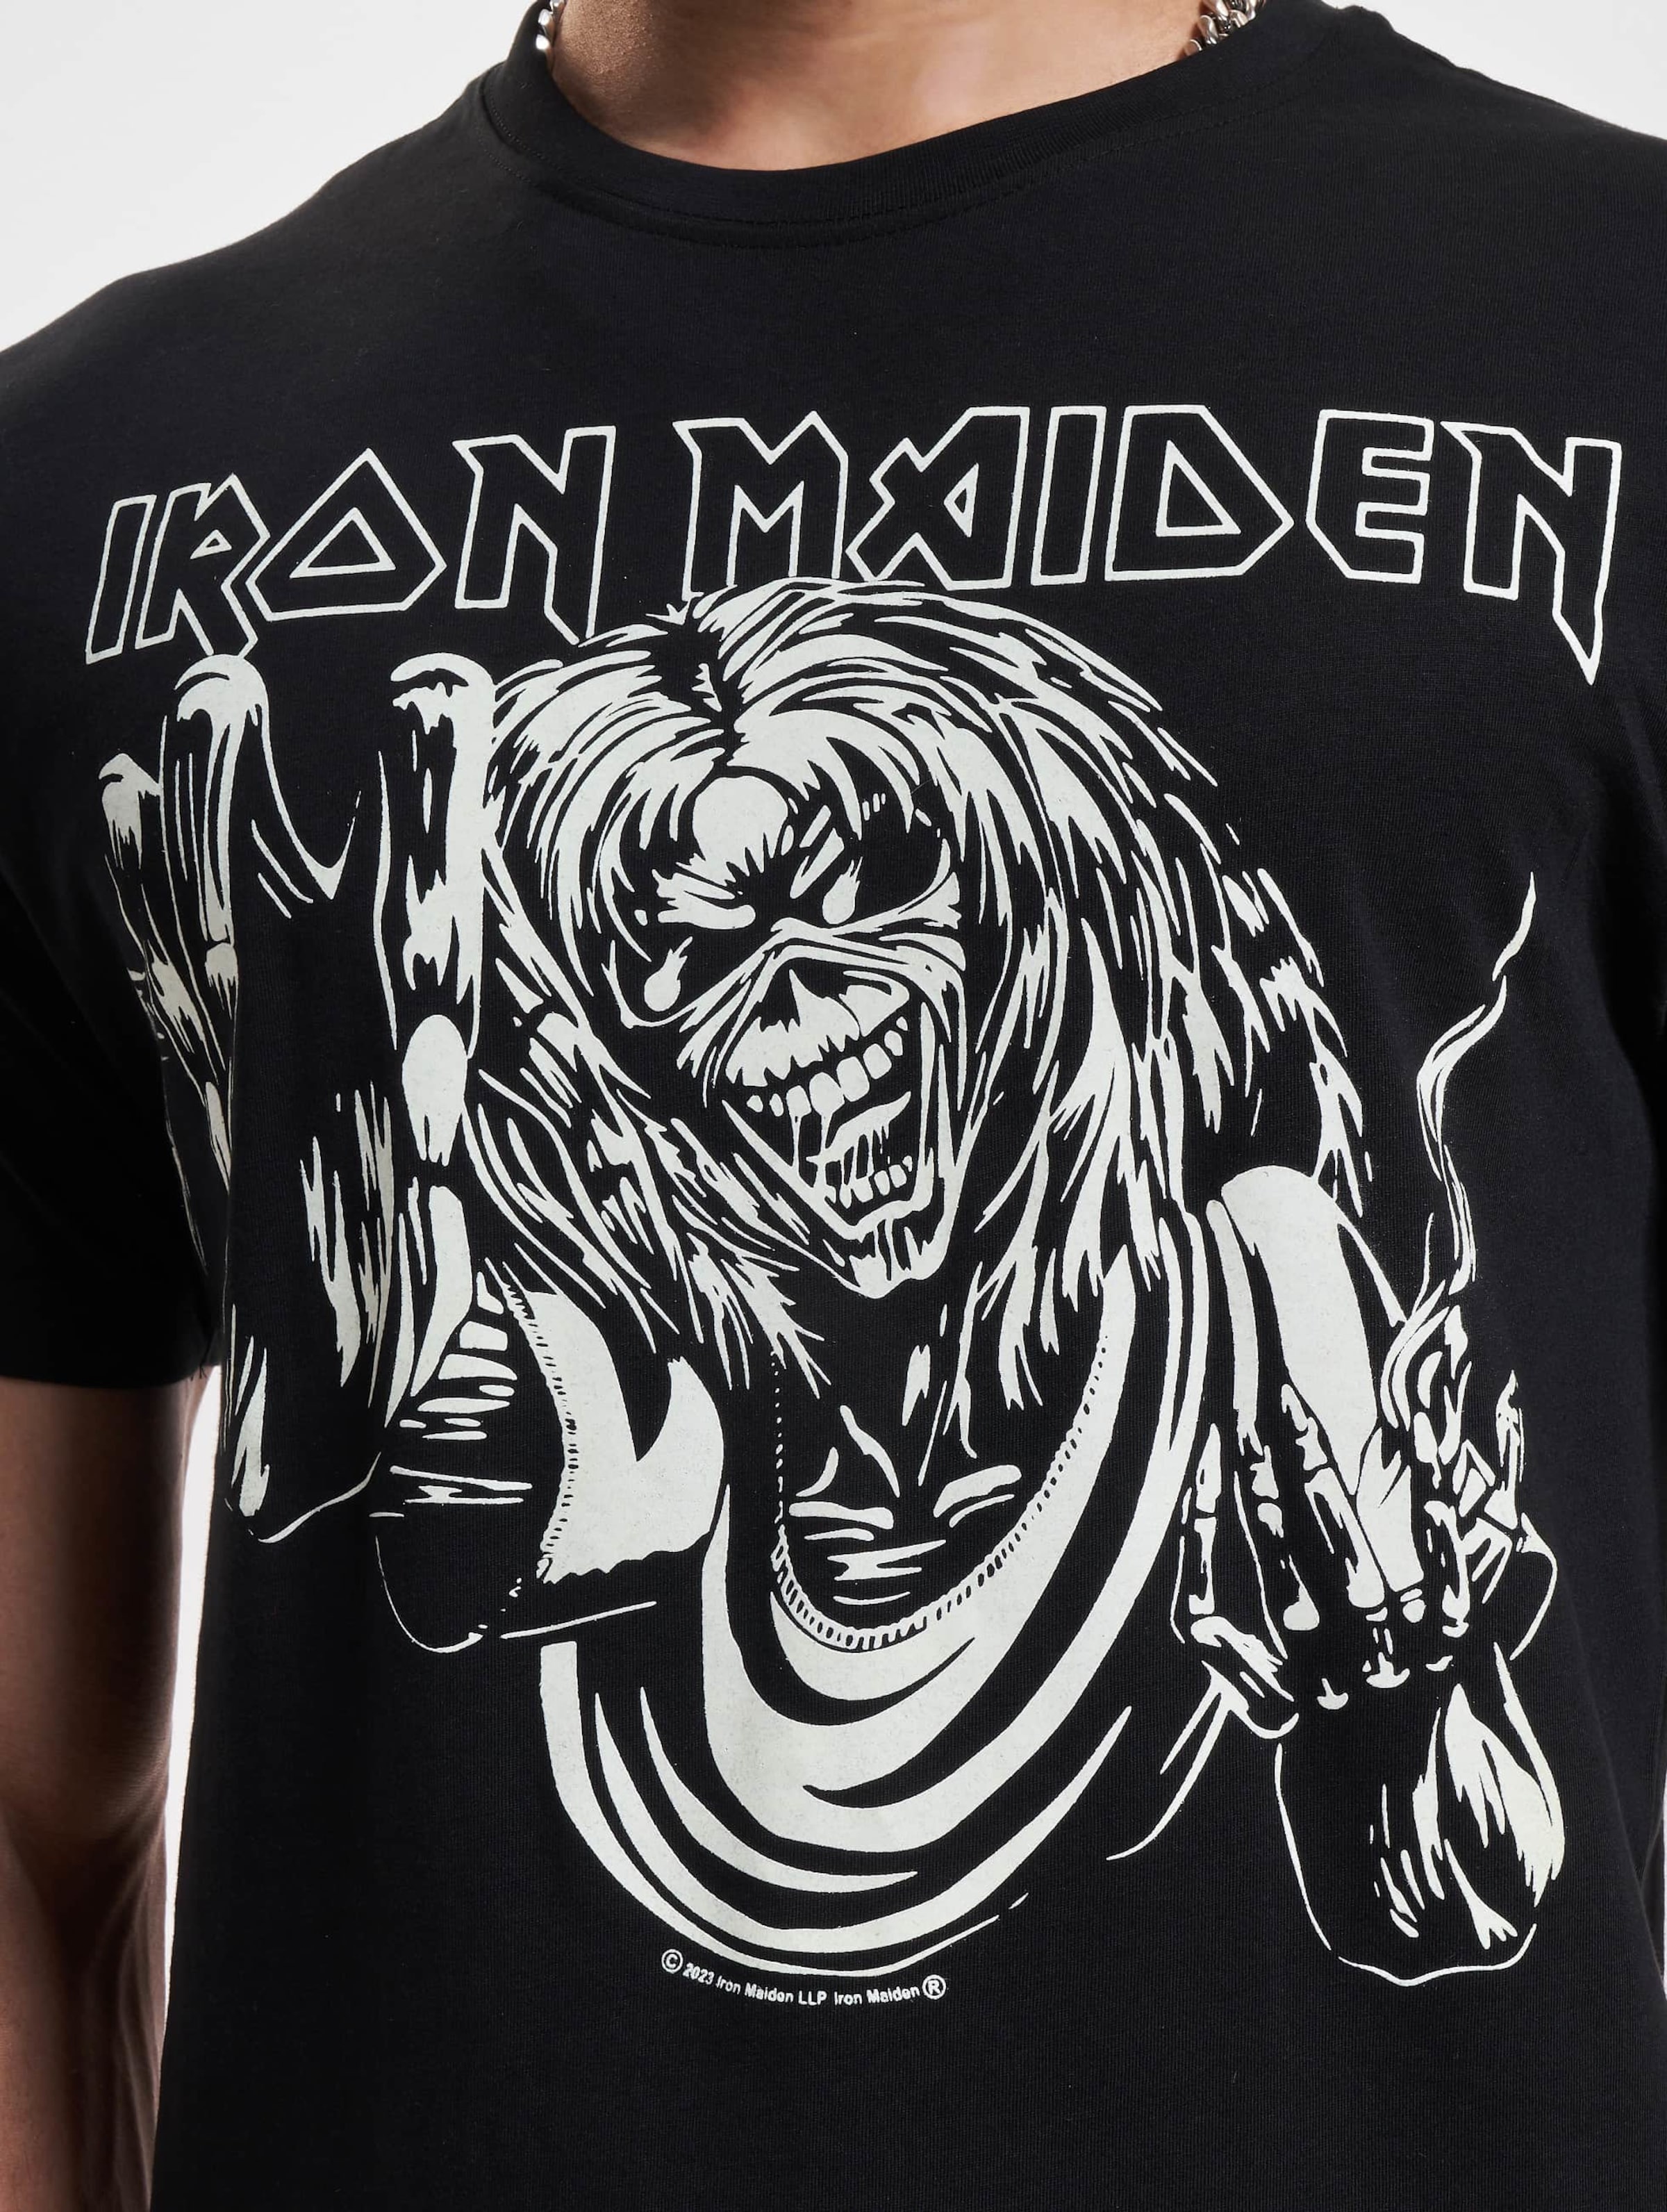 Iron Maiden Eddy Glow